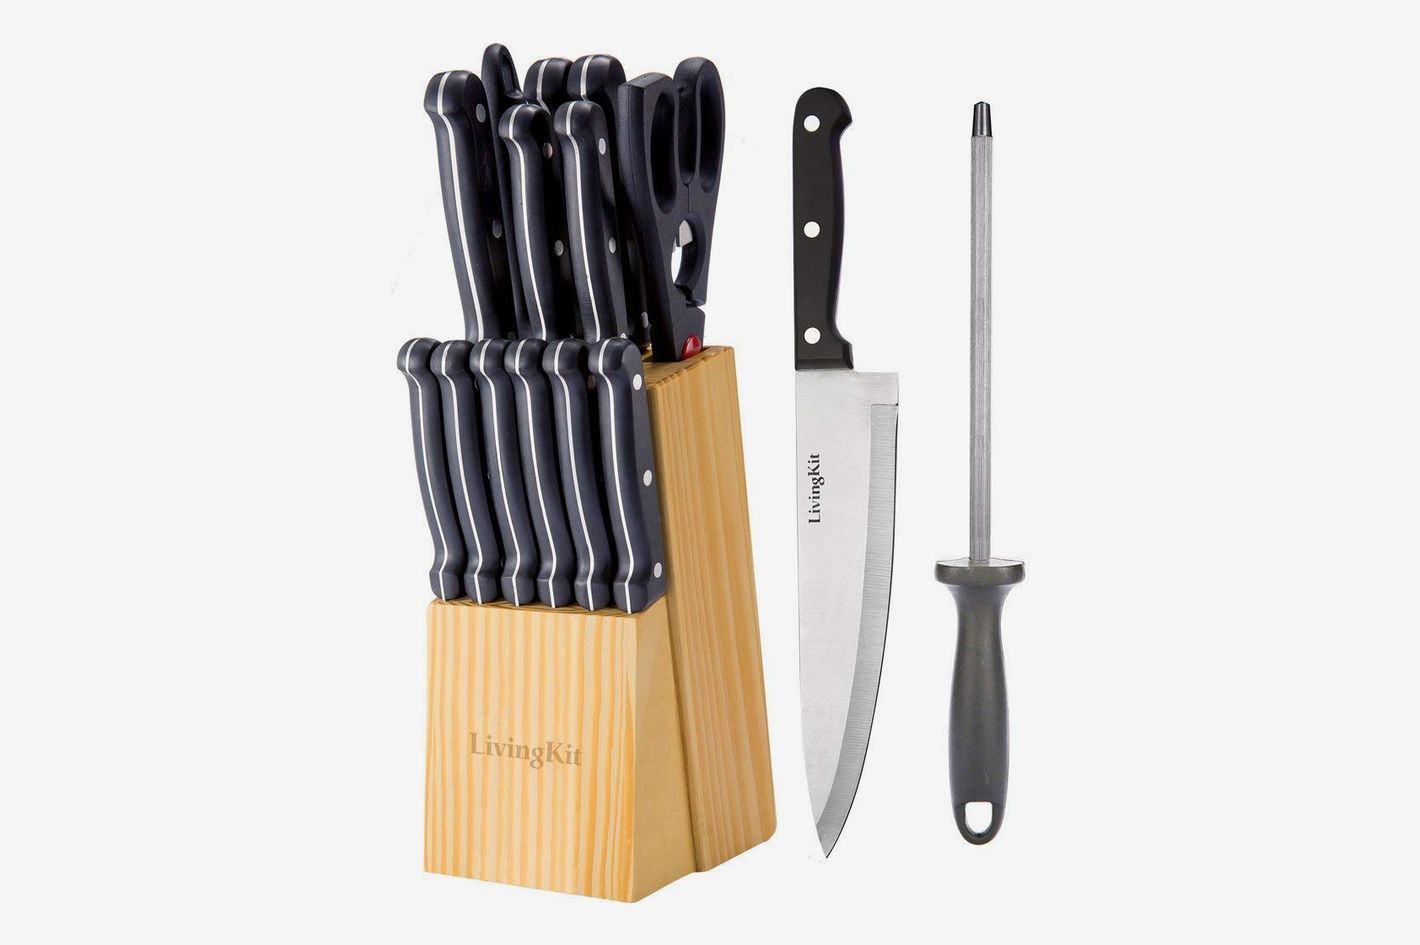 Хороший набор кухонных ножей. Kuk-10/8131222 набор кухонных ножей Kukmara. Kuk-10/8221322 набор кухонных ножей Kukmara. Kuk-10/8147222 набор кухонных ножей Kukmara. Нож Kitchen Prince.